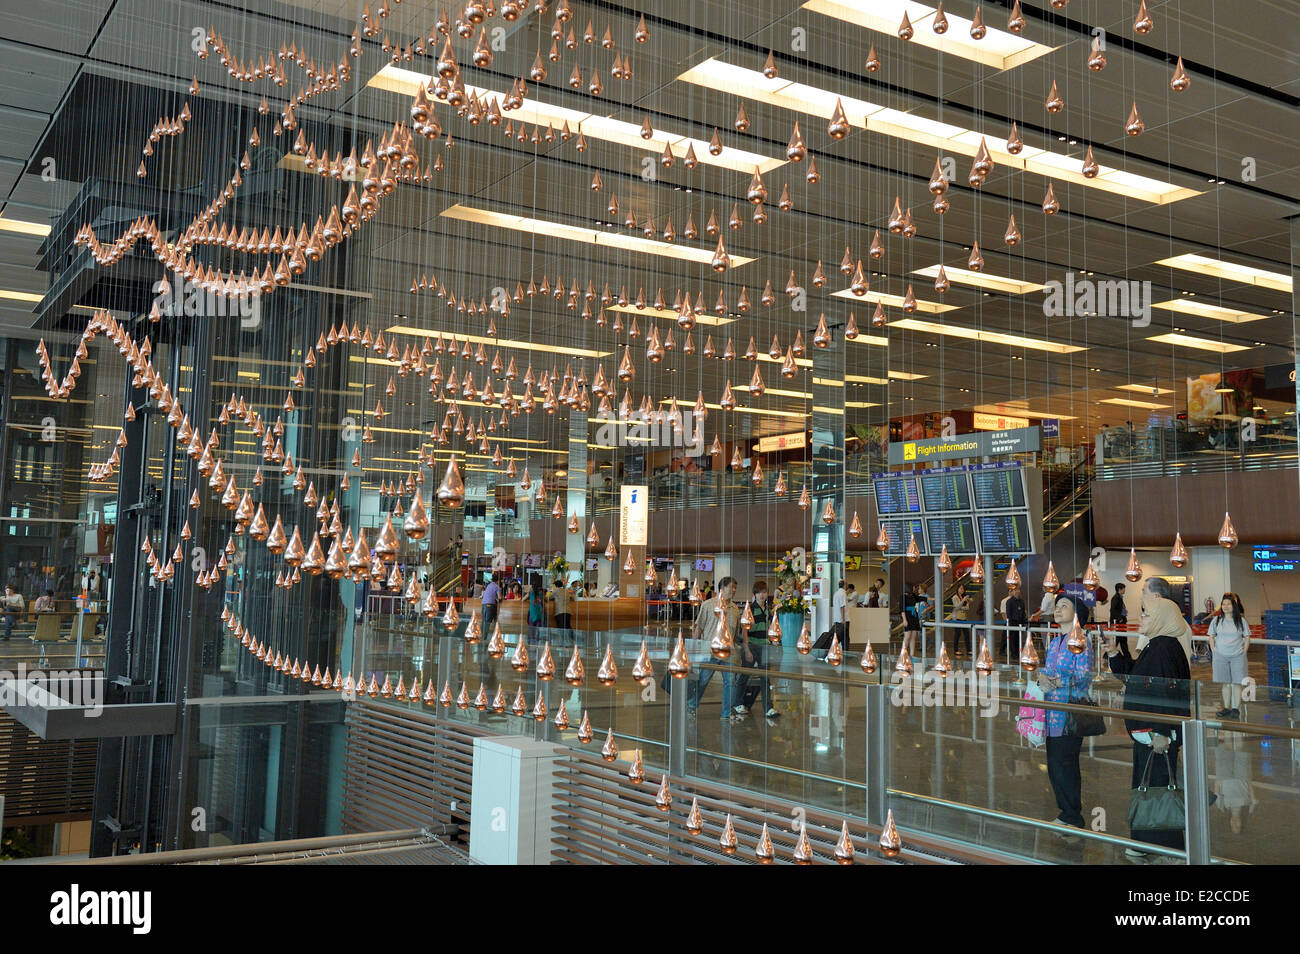 Singapour, dans l'aérogare 1 de l'aéroport de Changi est une œuvre artistique, cinétiques, Pluie par Joachim Sauter de ART  + COM et ayant plus de 1216 gouttes de bronze en suspension dans l'air qui se déplacent dans une chorégraphie synchronisée Banque D'Images